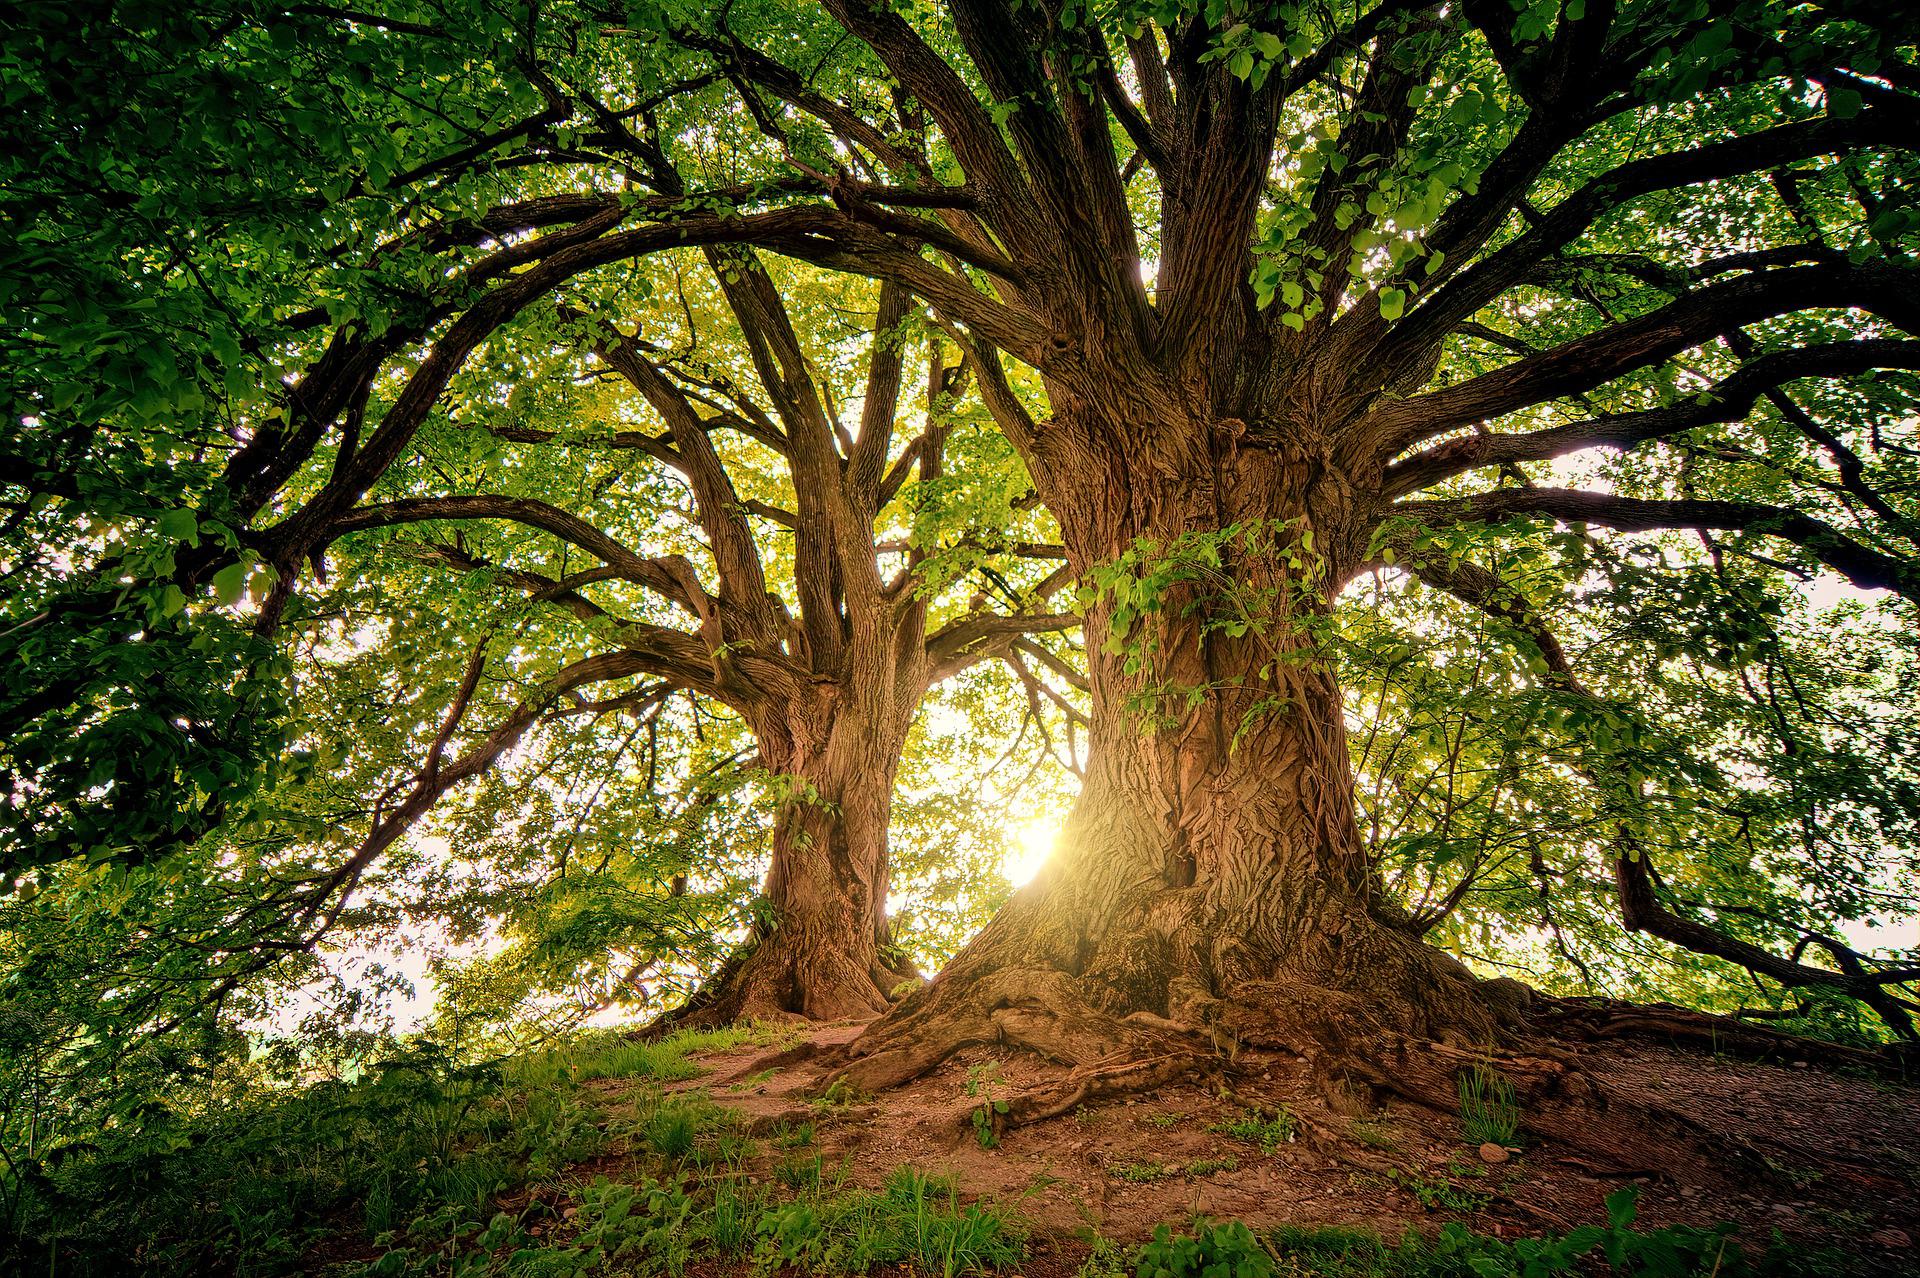 Positives Verbraucherurteil vom europäischen Gerichtshof Baum Wald Sonne Pflanze Blätter Ast Natur Bäume